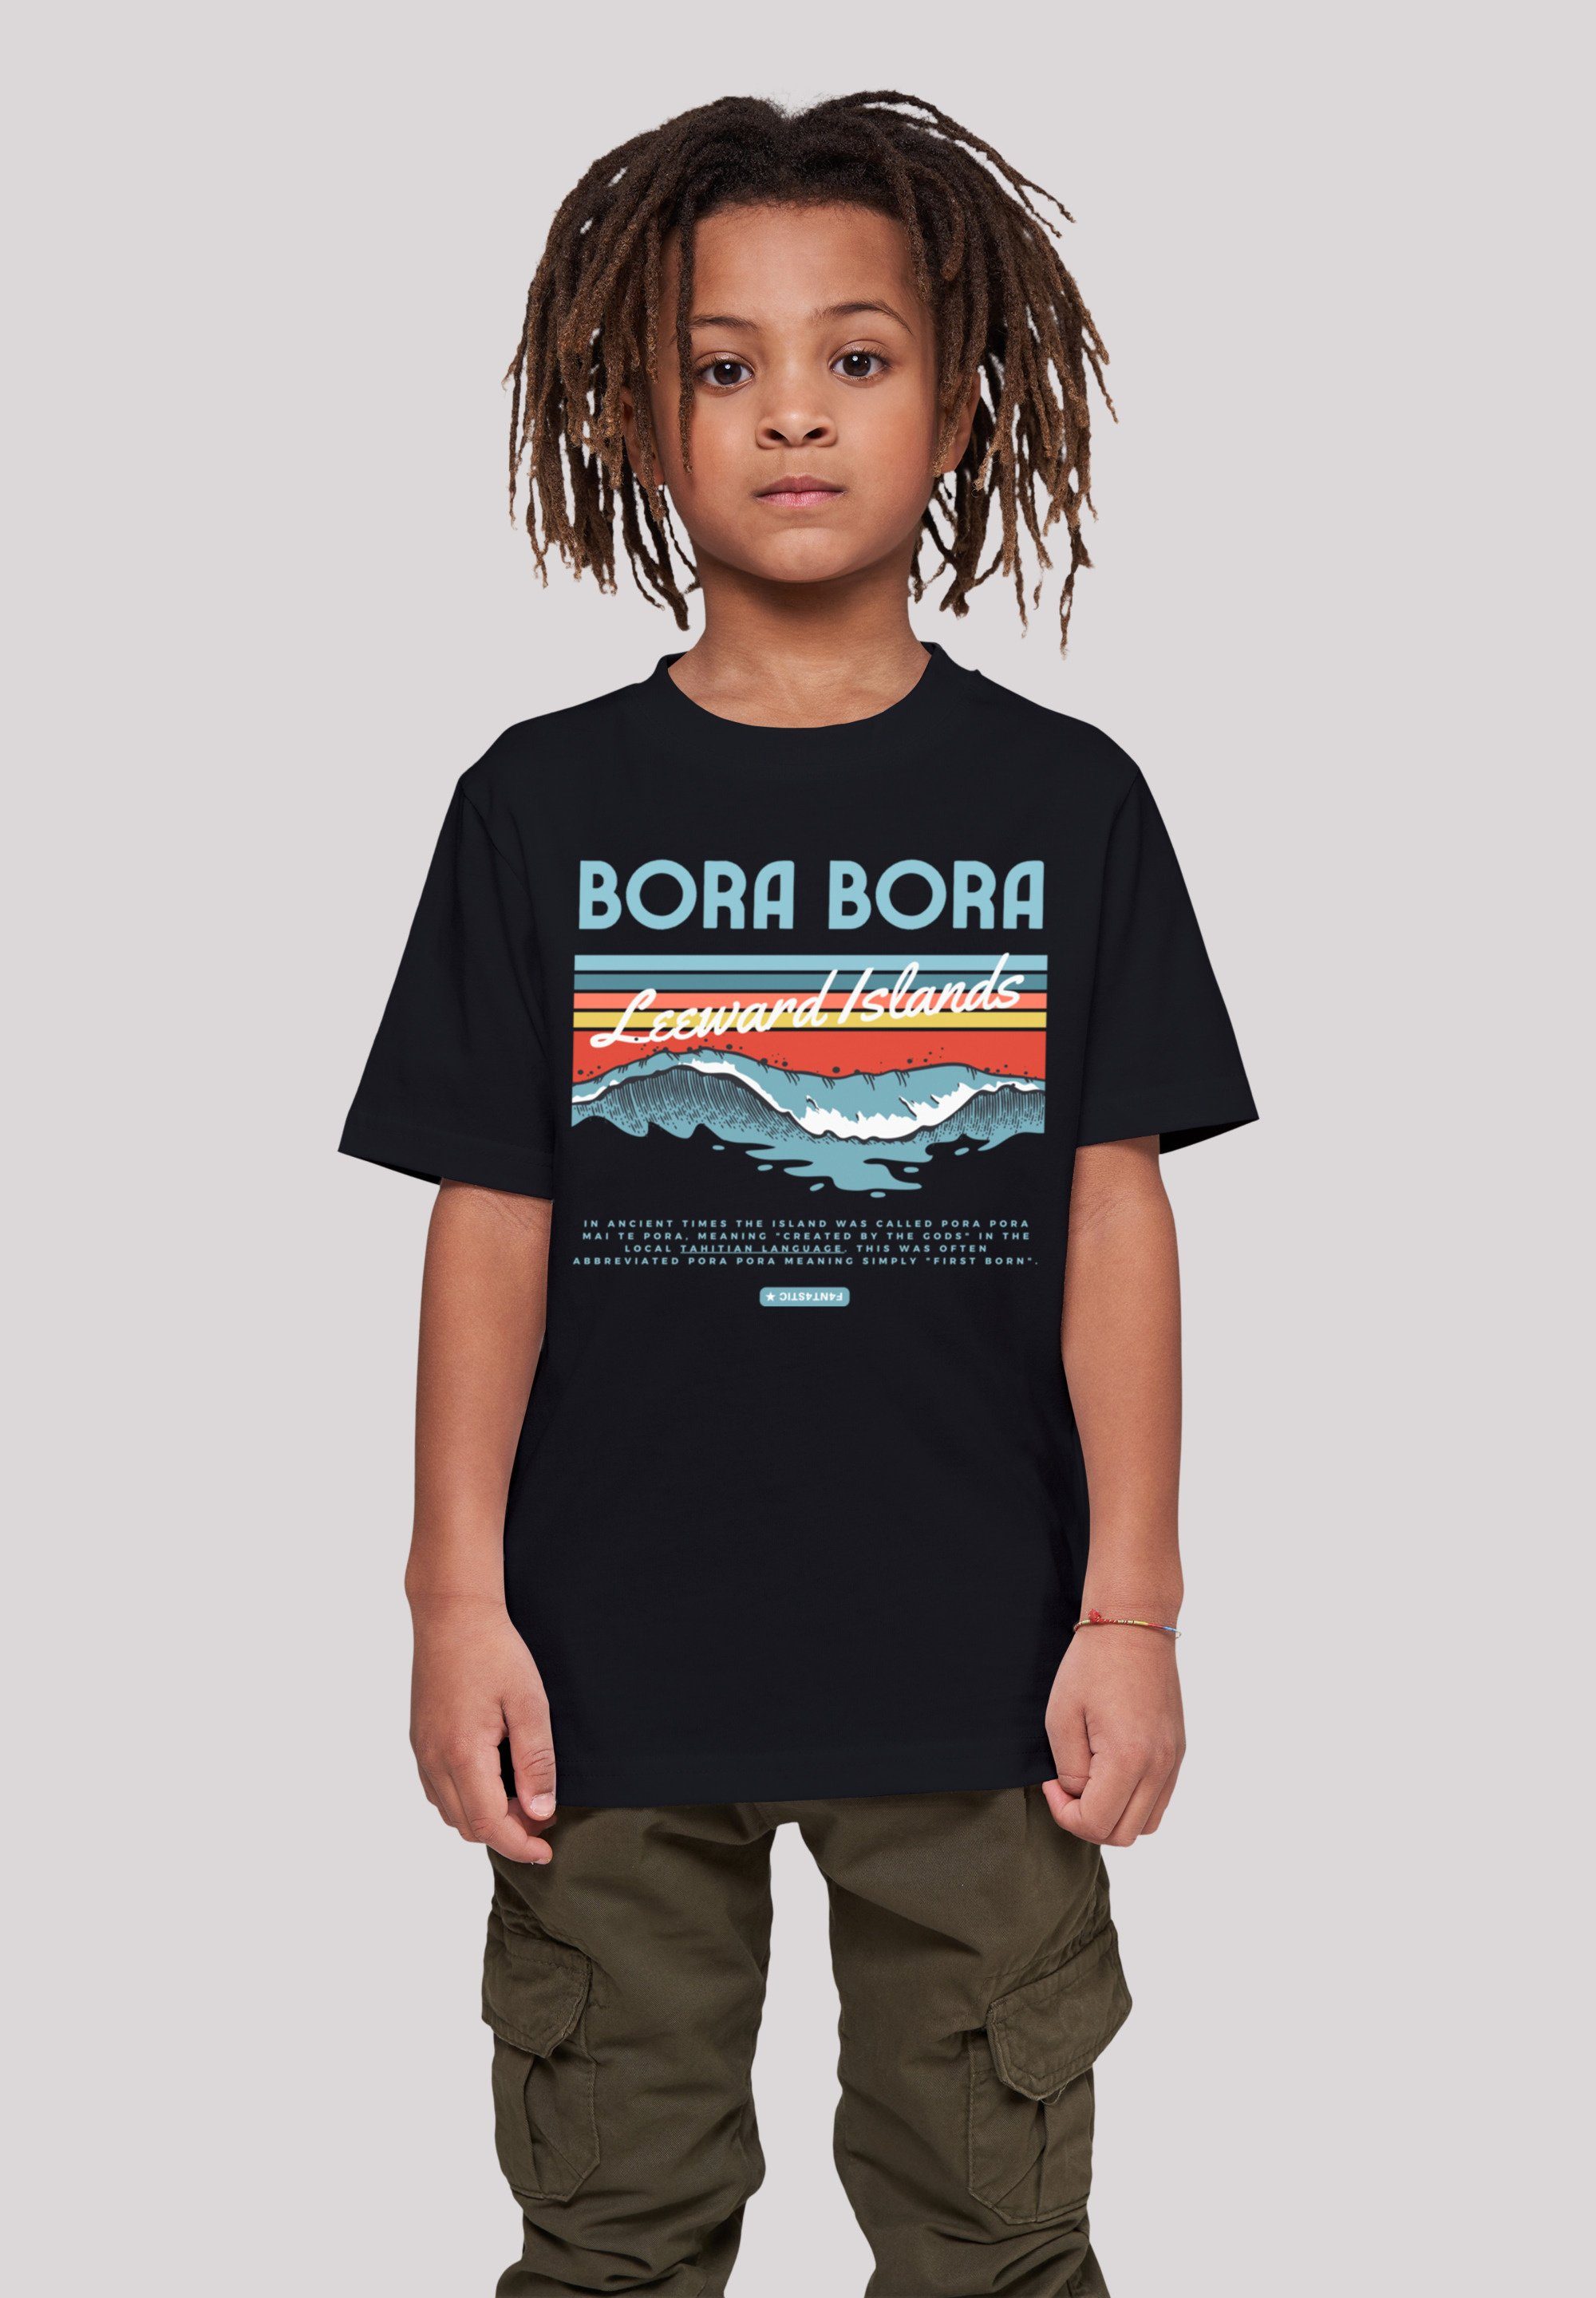 groß Island Bora T-Shirt Bora Leewards Größe F4NT4STIC Model 145/152 und 145 Print, cm trägt ist Das